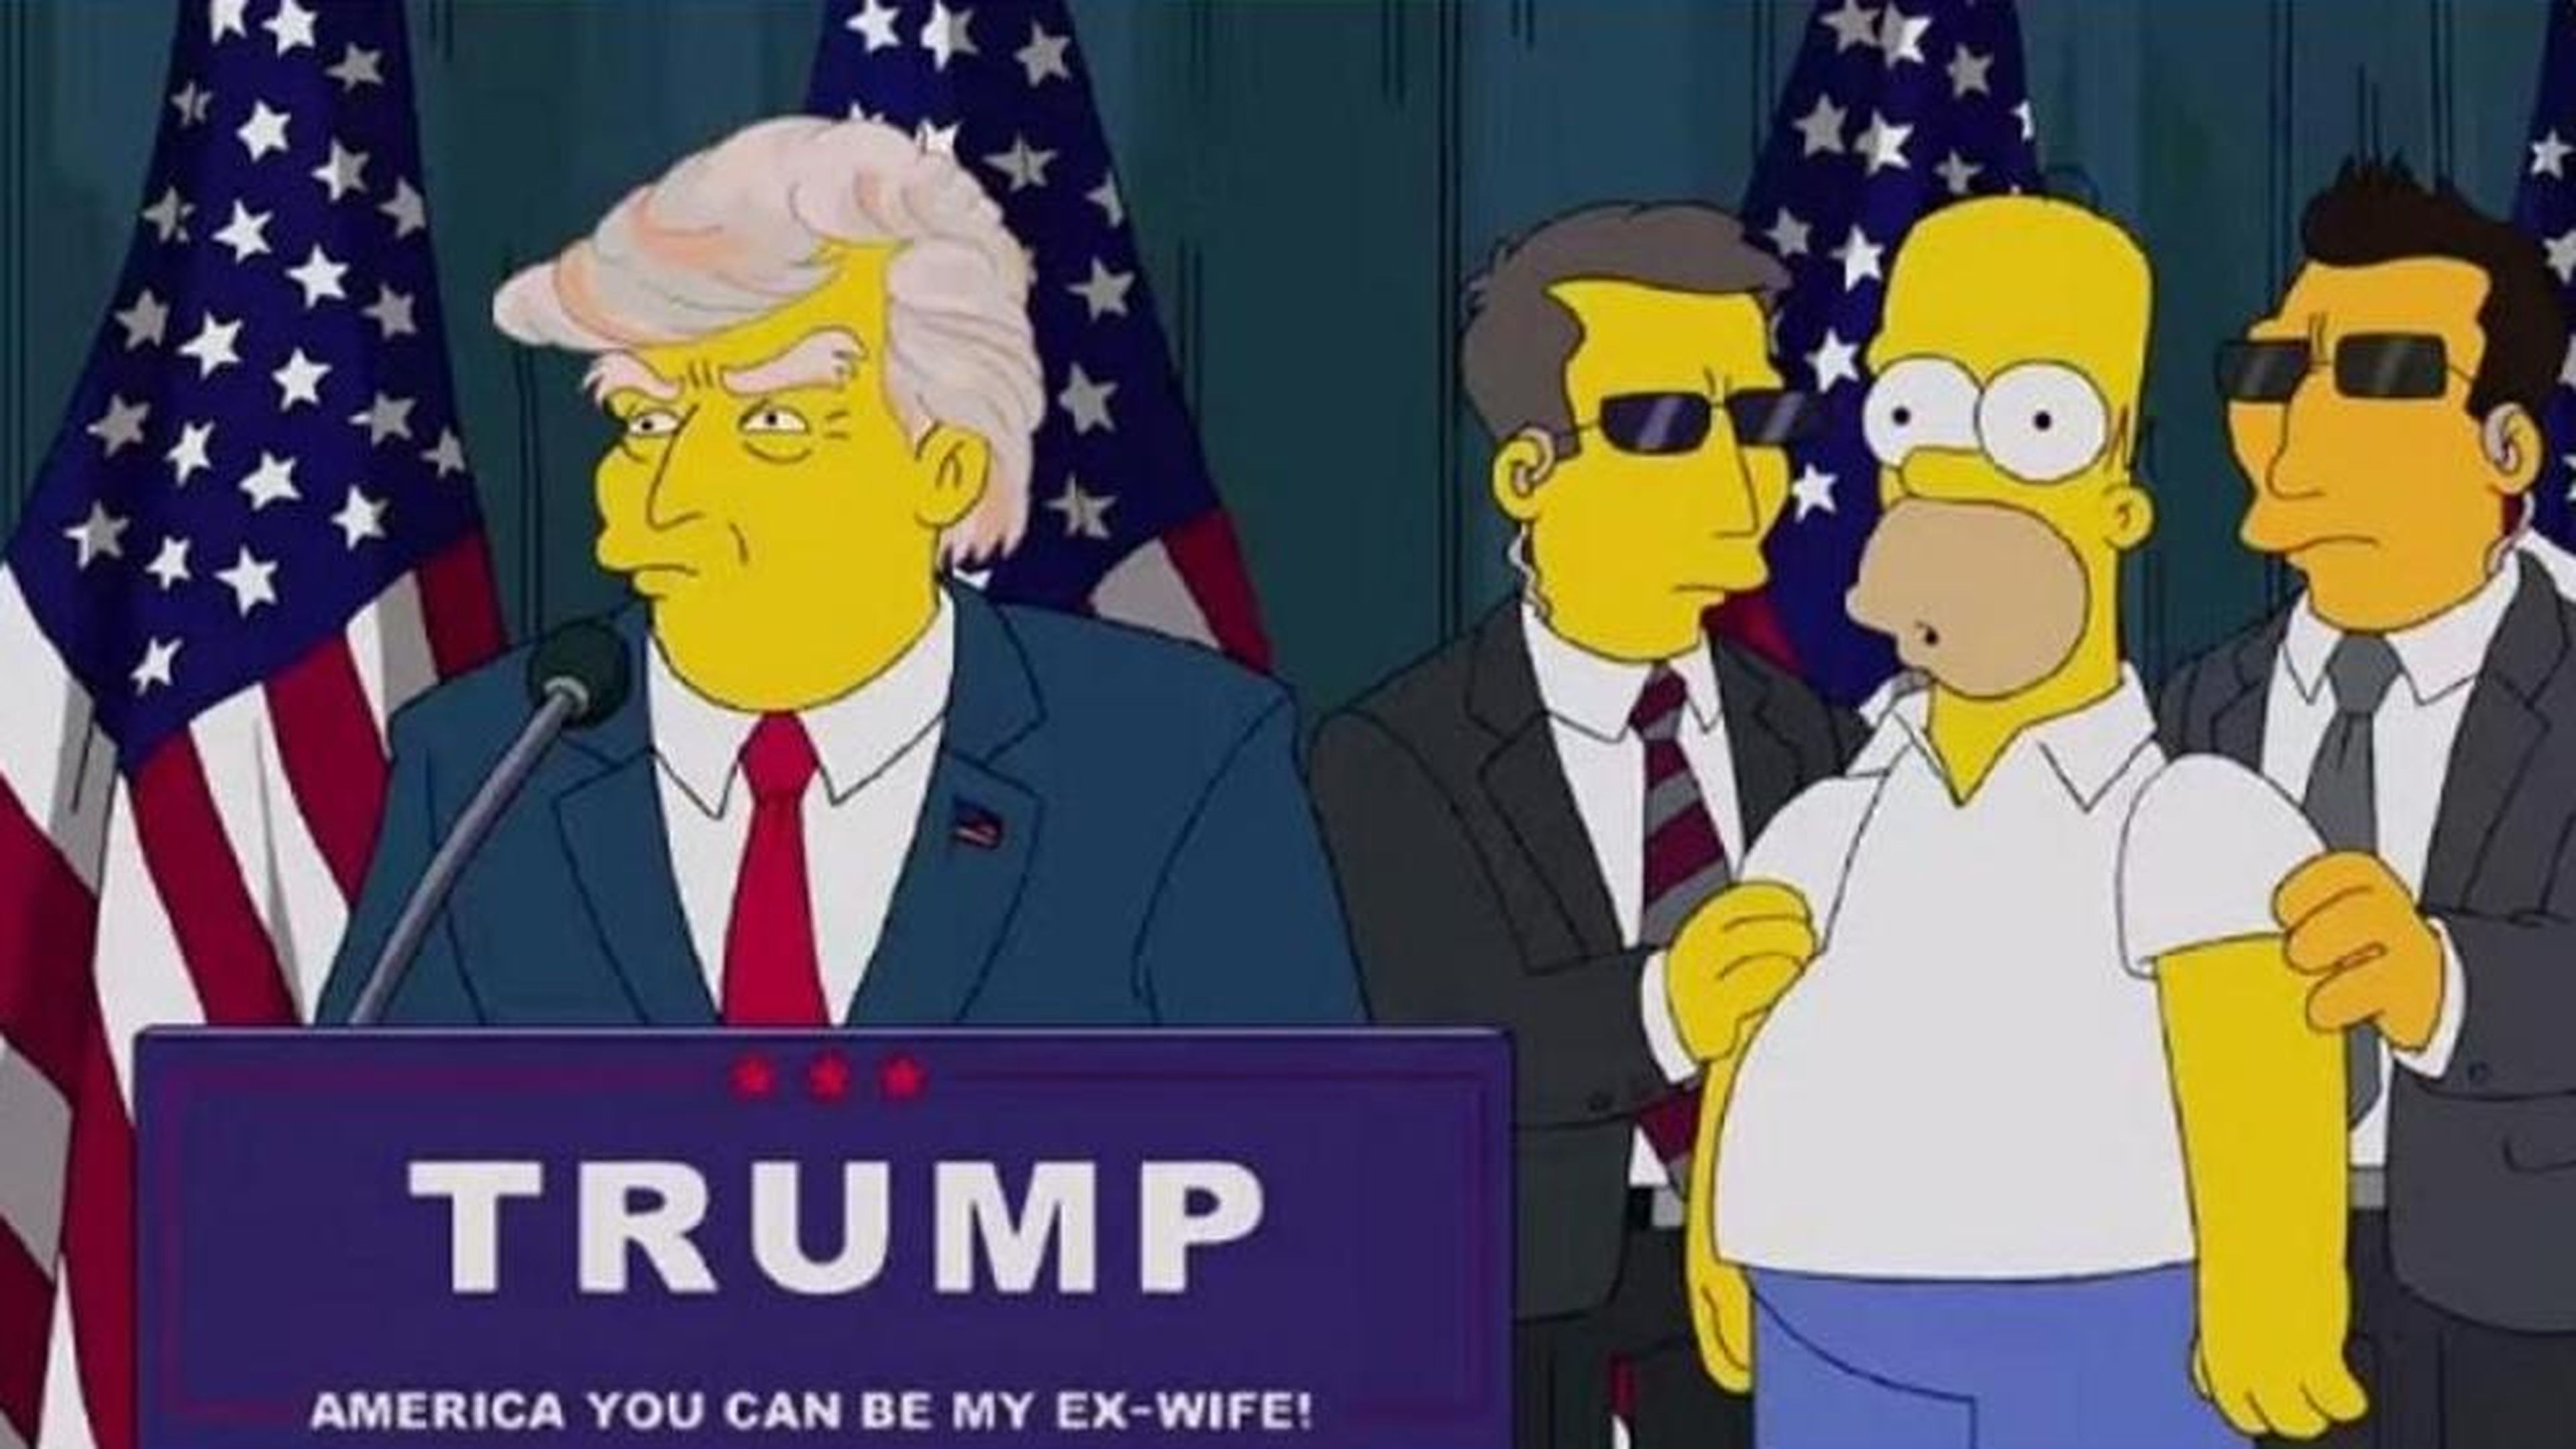 Una escena de Los Simpson con Donald Trump como presidente